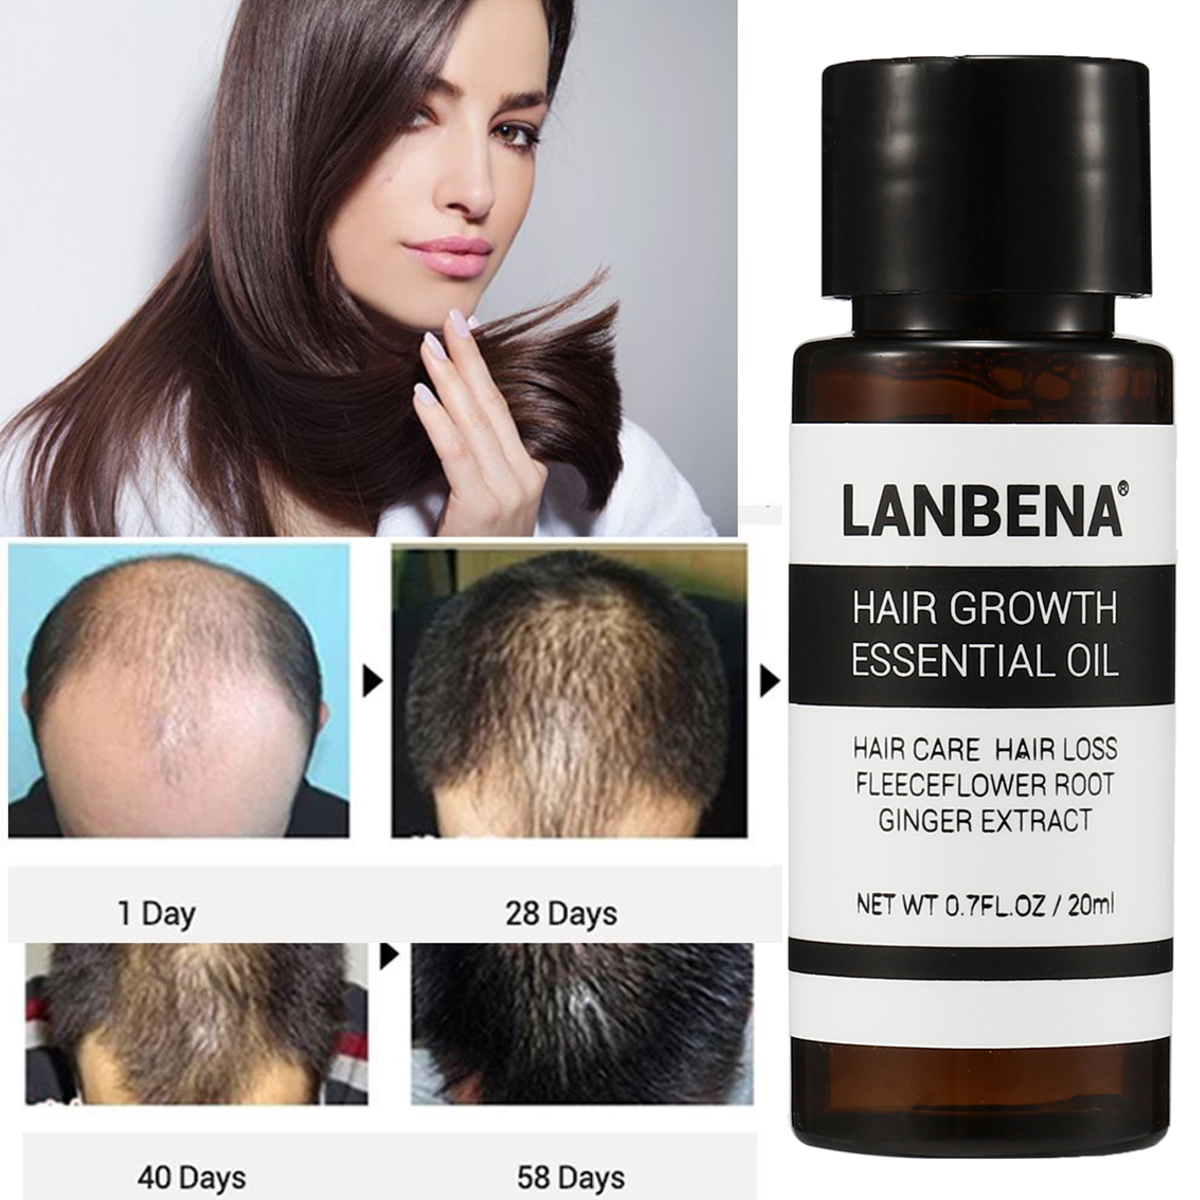 Fast-Powerful-Hair-Growth-Essence-Oil-Treatment-Anti-Hair-Loss-Hair-Care-1373020